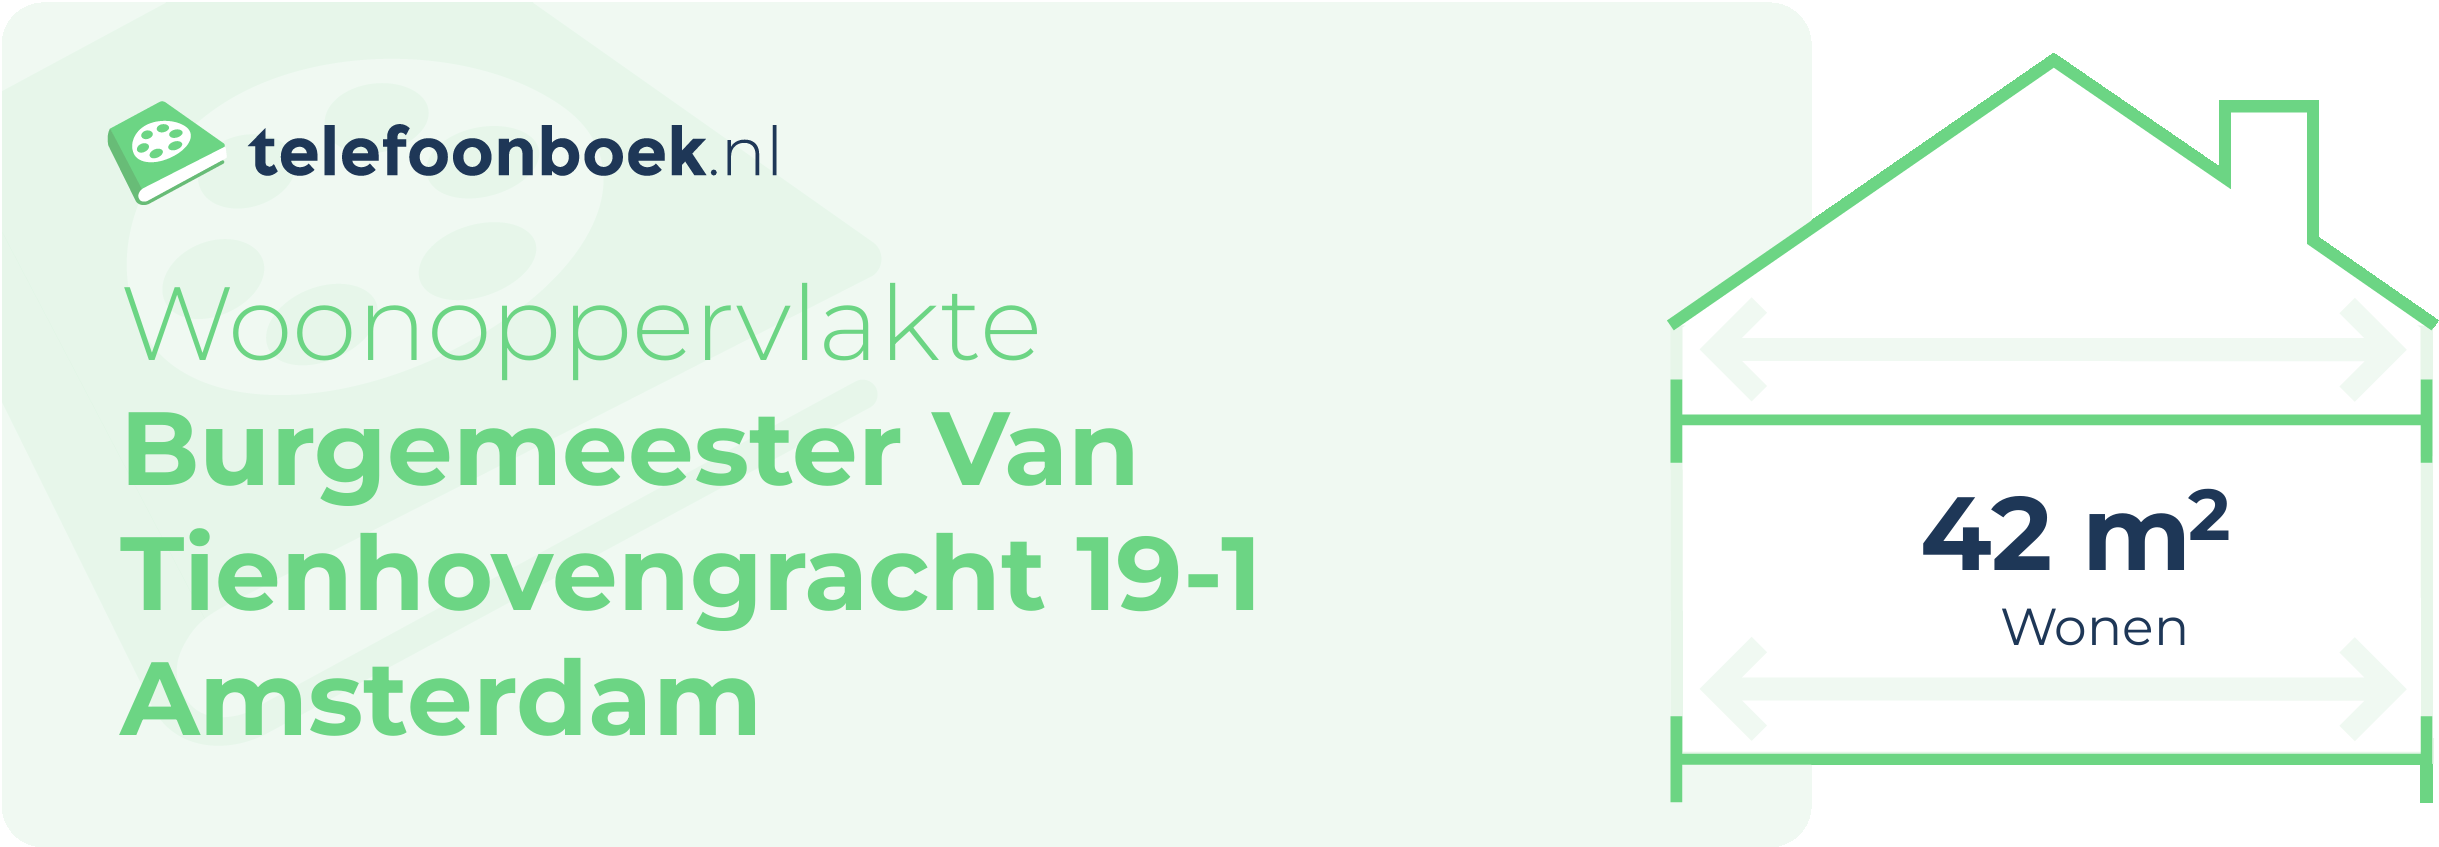 Woonoppervlakte Burgemeester Van Tienhovengracht 19-1 Amsterdam